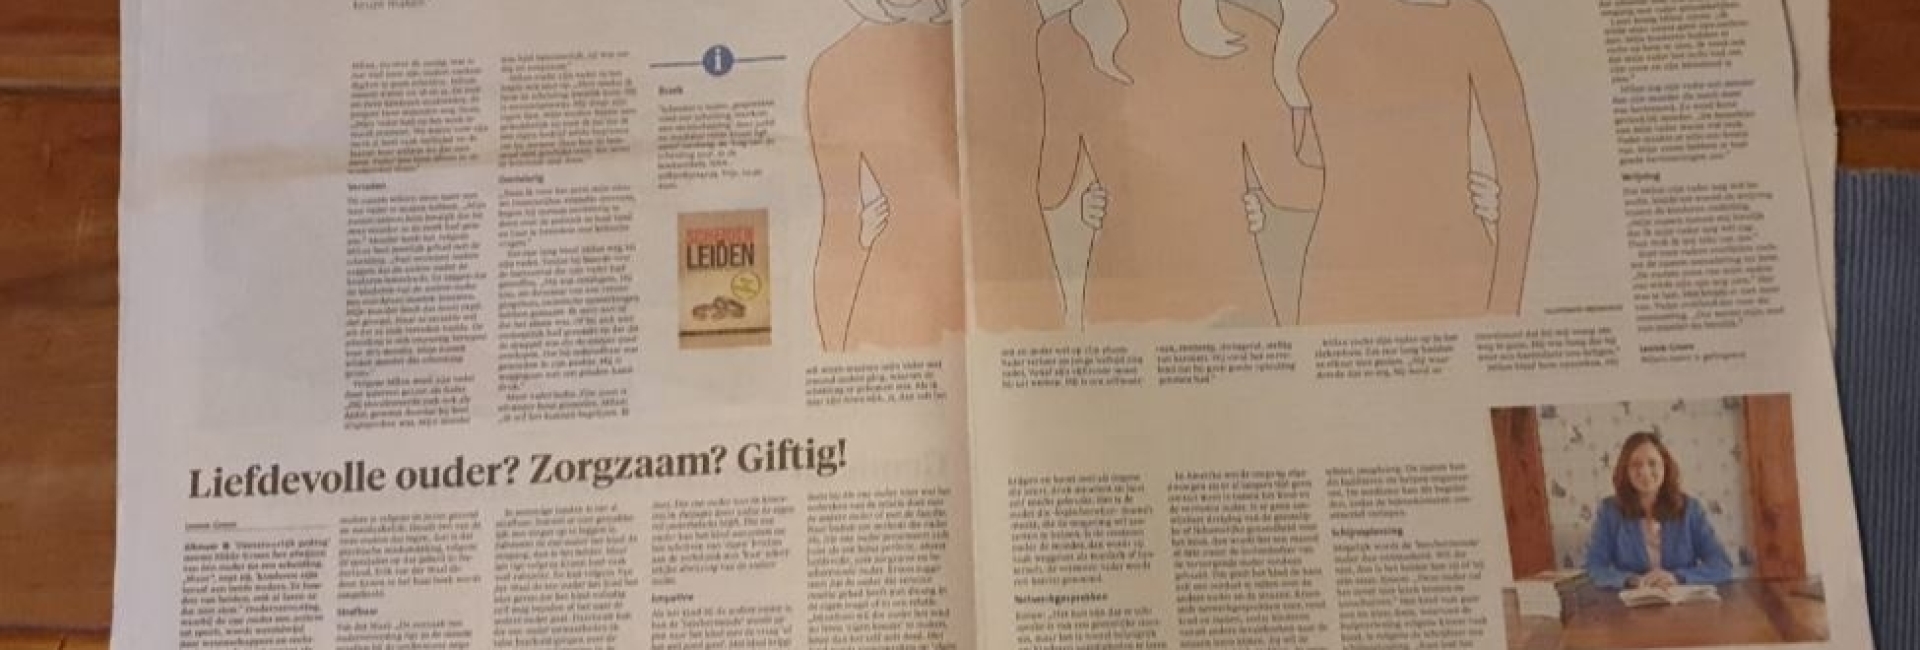 Artikel over scheiden in Noordhollands Dagblad